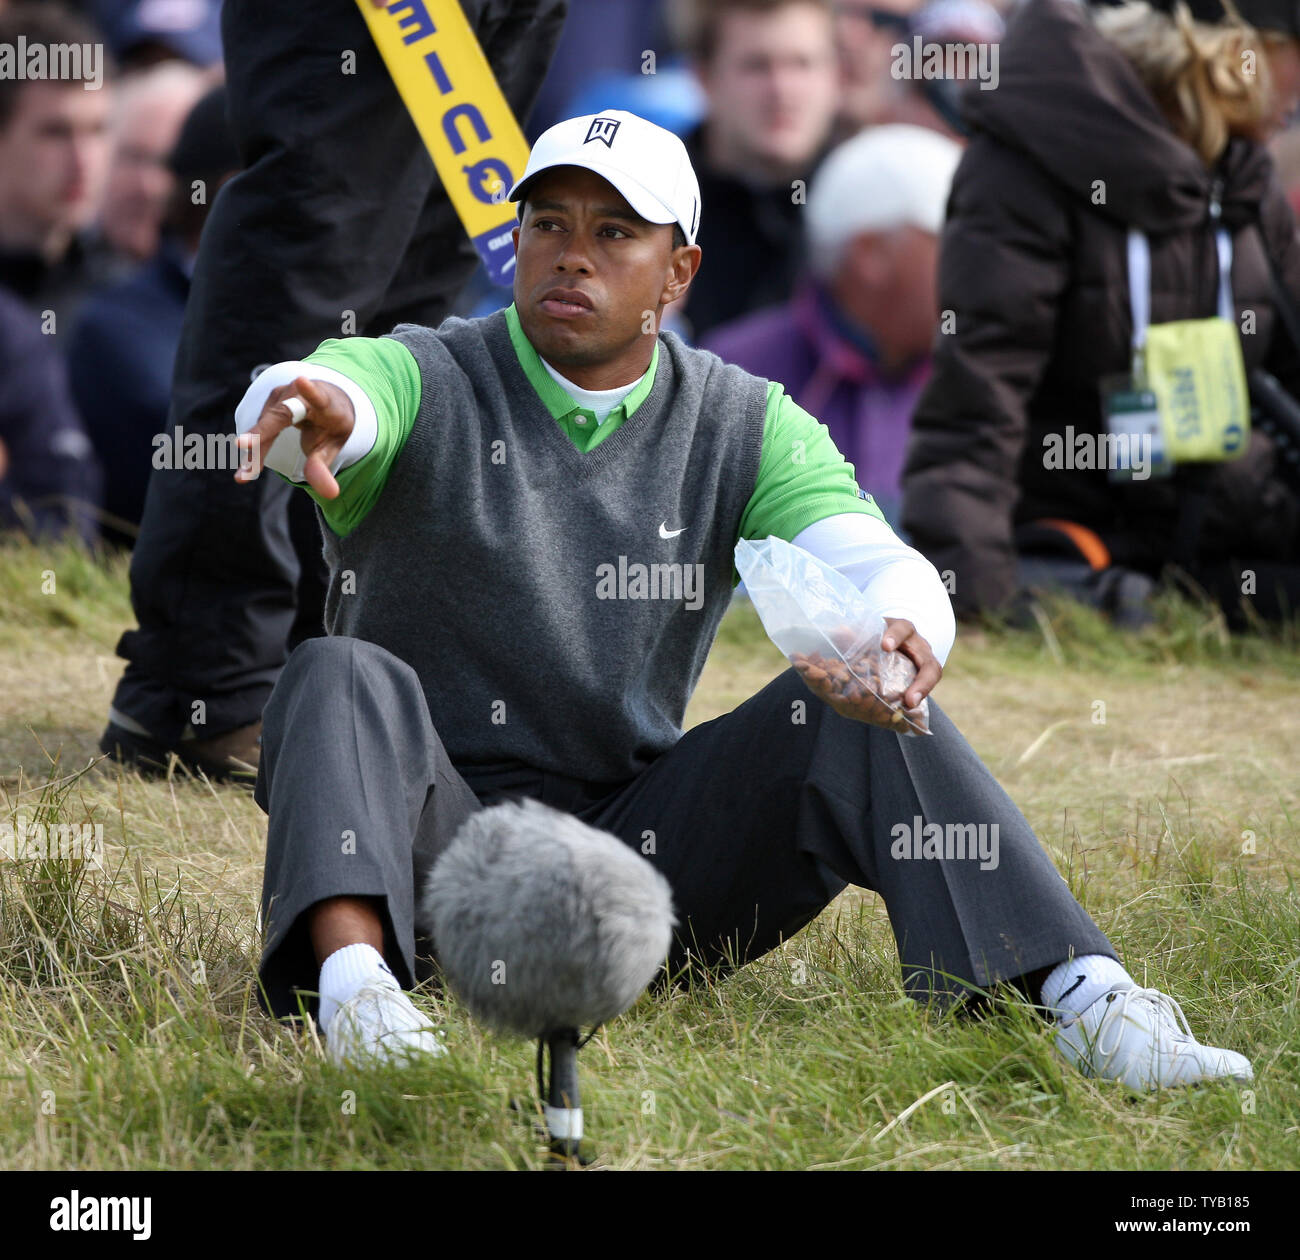 American Tiger Woods isst Nüsse auf dem 5 Loch am zweiten Tag der offenen Meisterschaft in St. Andrews, Schottland am 16. Juli 2010. UPI/Hugo Philpott Stockfoto